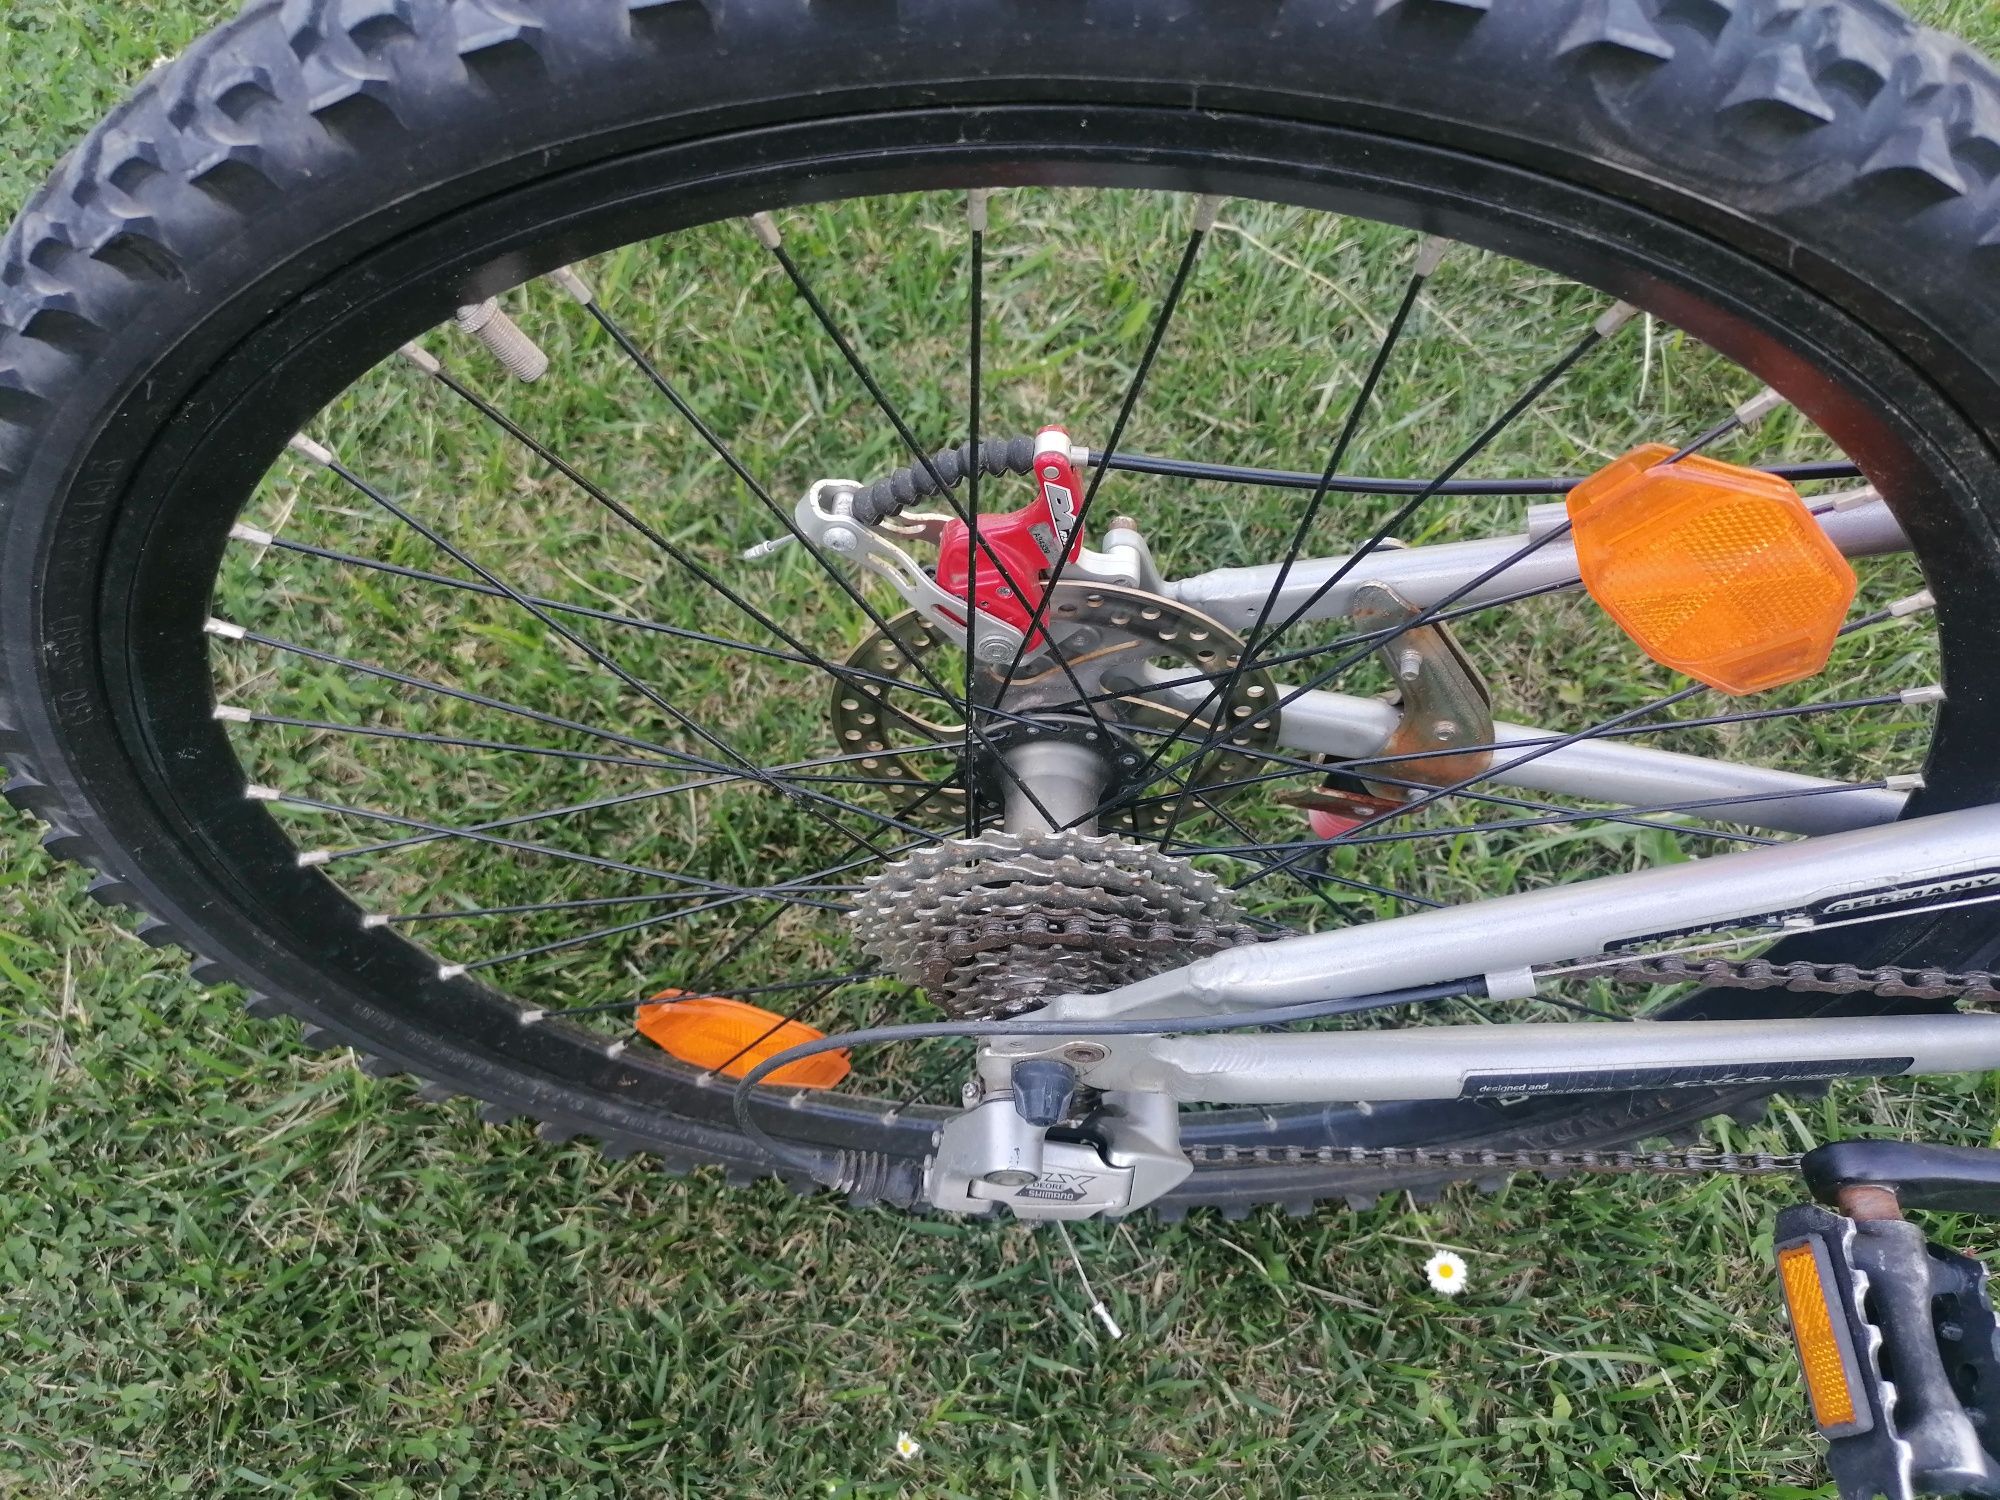 Bicicleta MTB 26 frână pe disc cyco suspensie ful